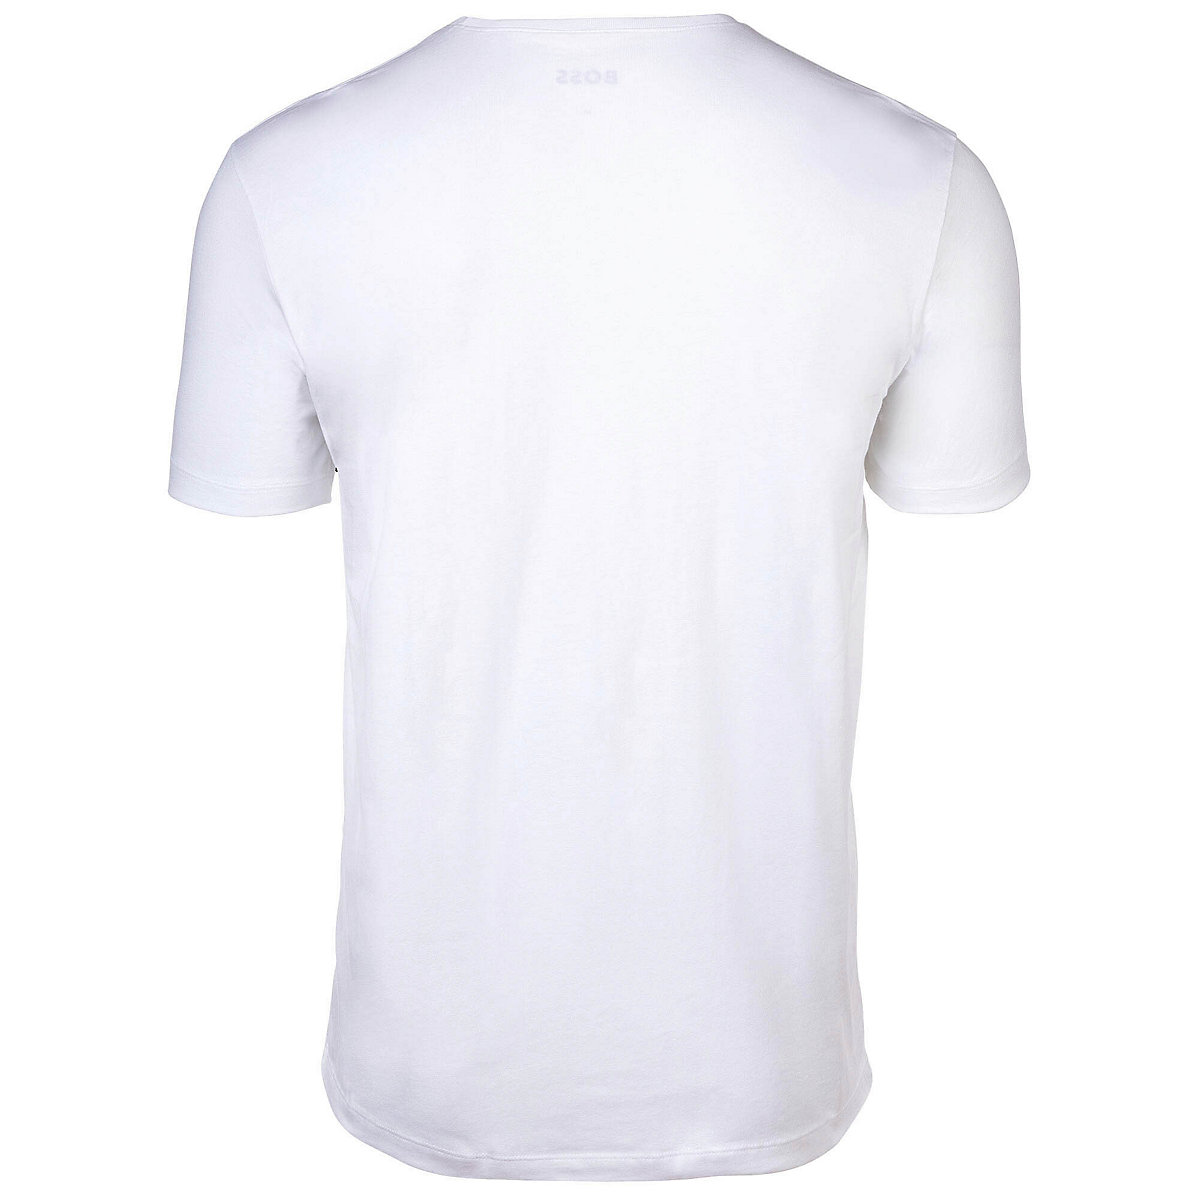 BOSS Herren T-Shirt 4er Pack TShirtRN Comfort Unterhemd Rundhals Cotton T-Shirts weiß CU10784